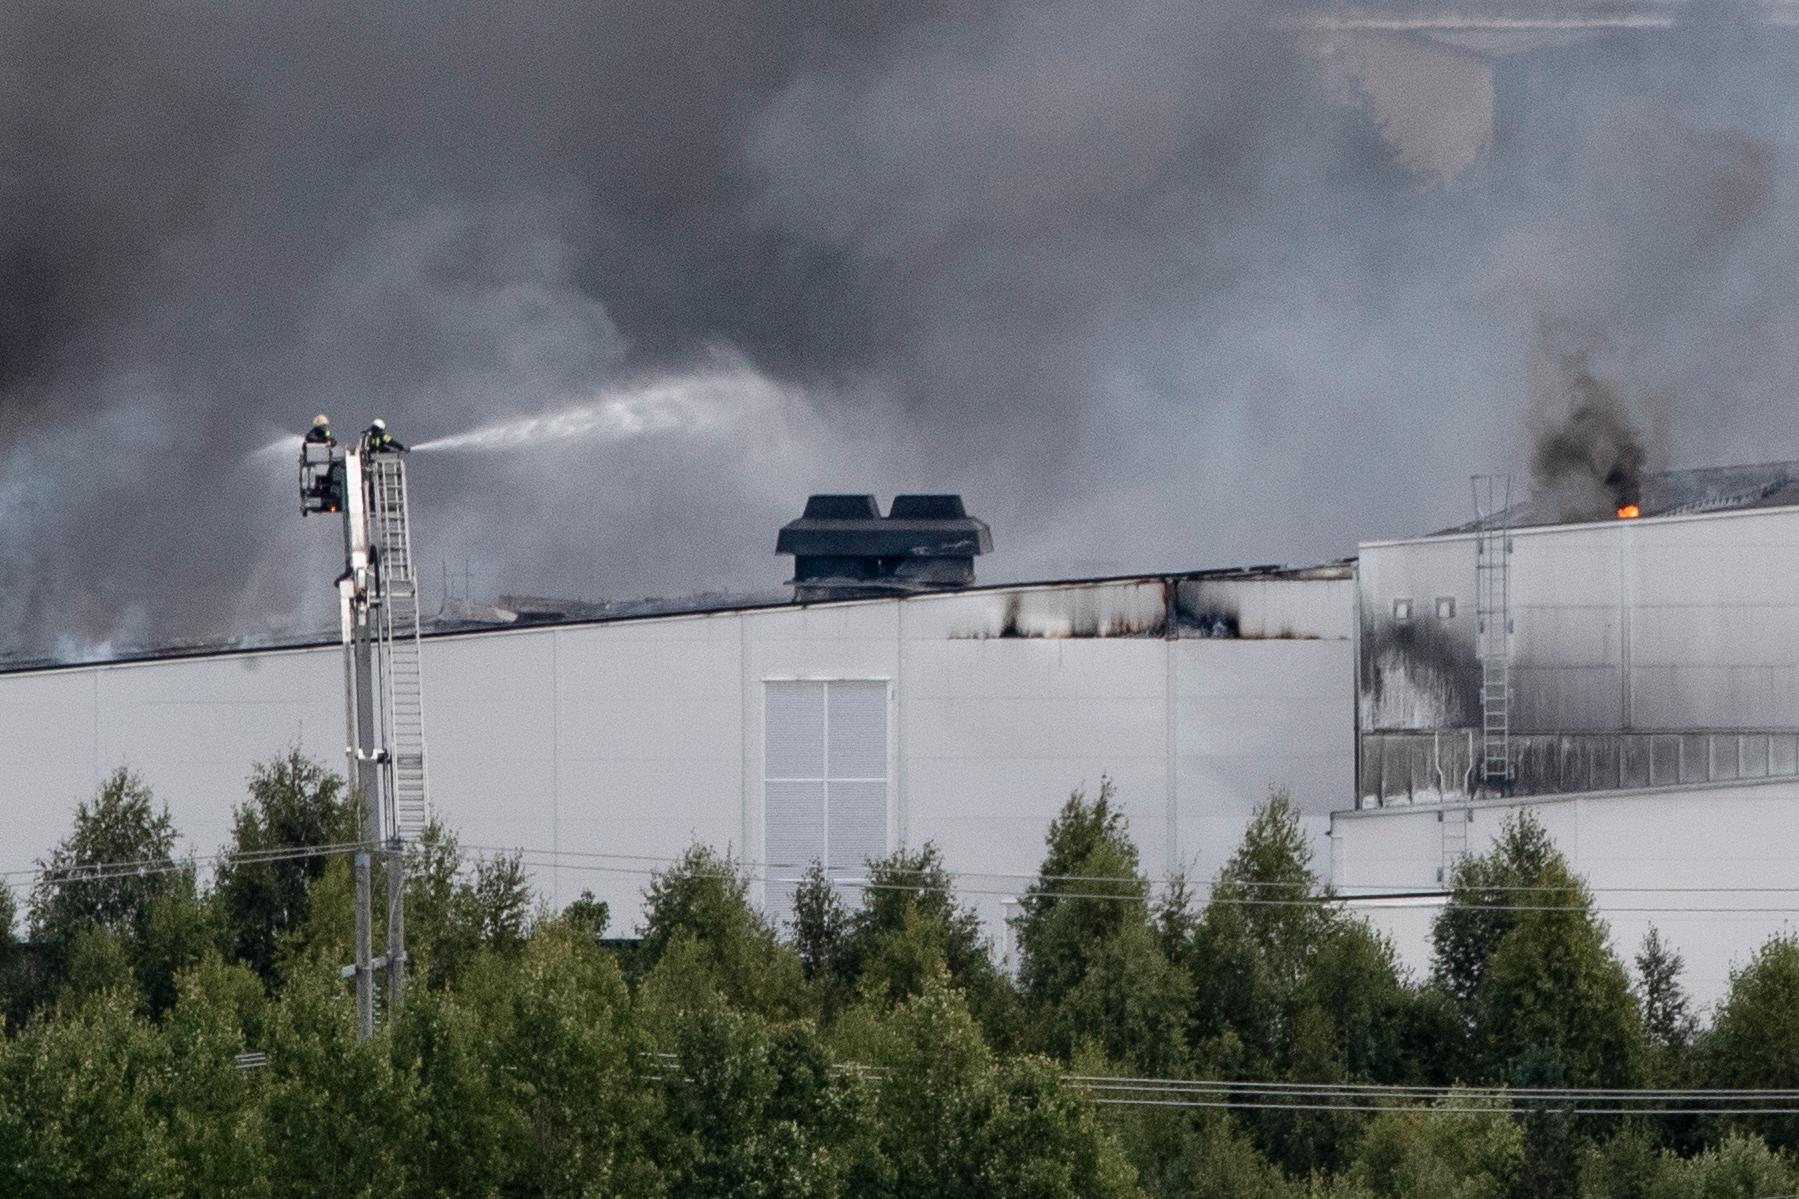 Fabriken är totalförstörd, enligt räddningstjänsten.